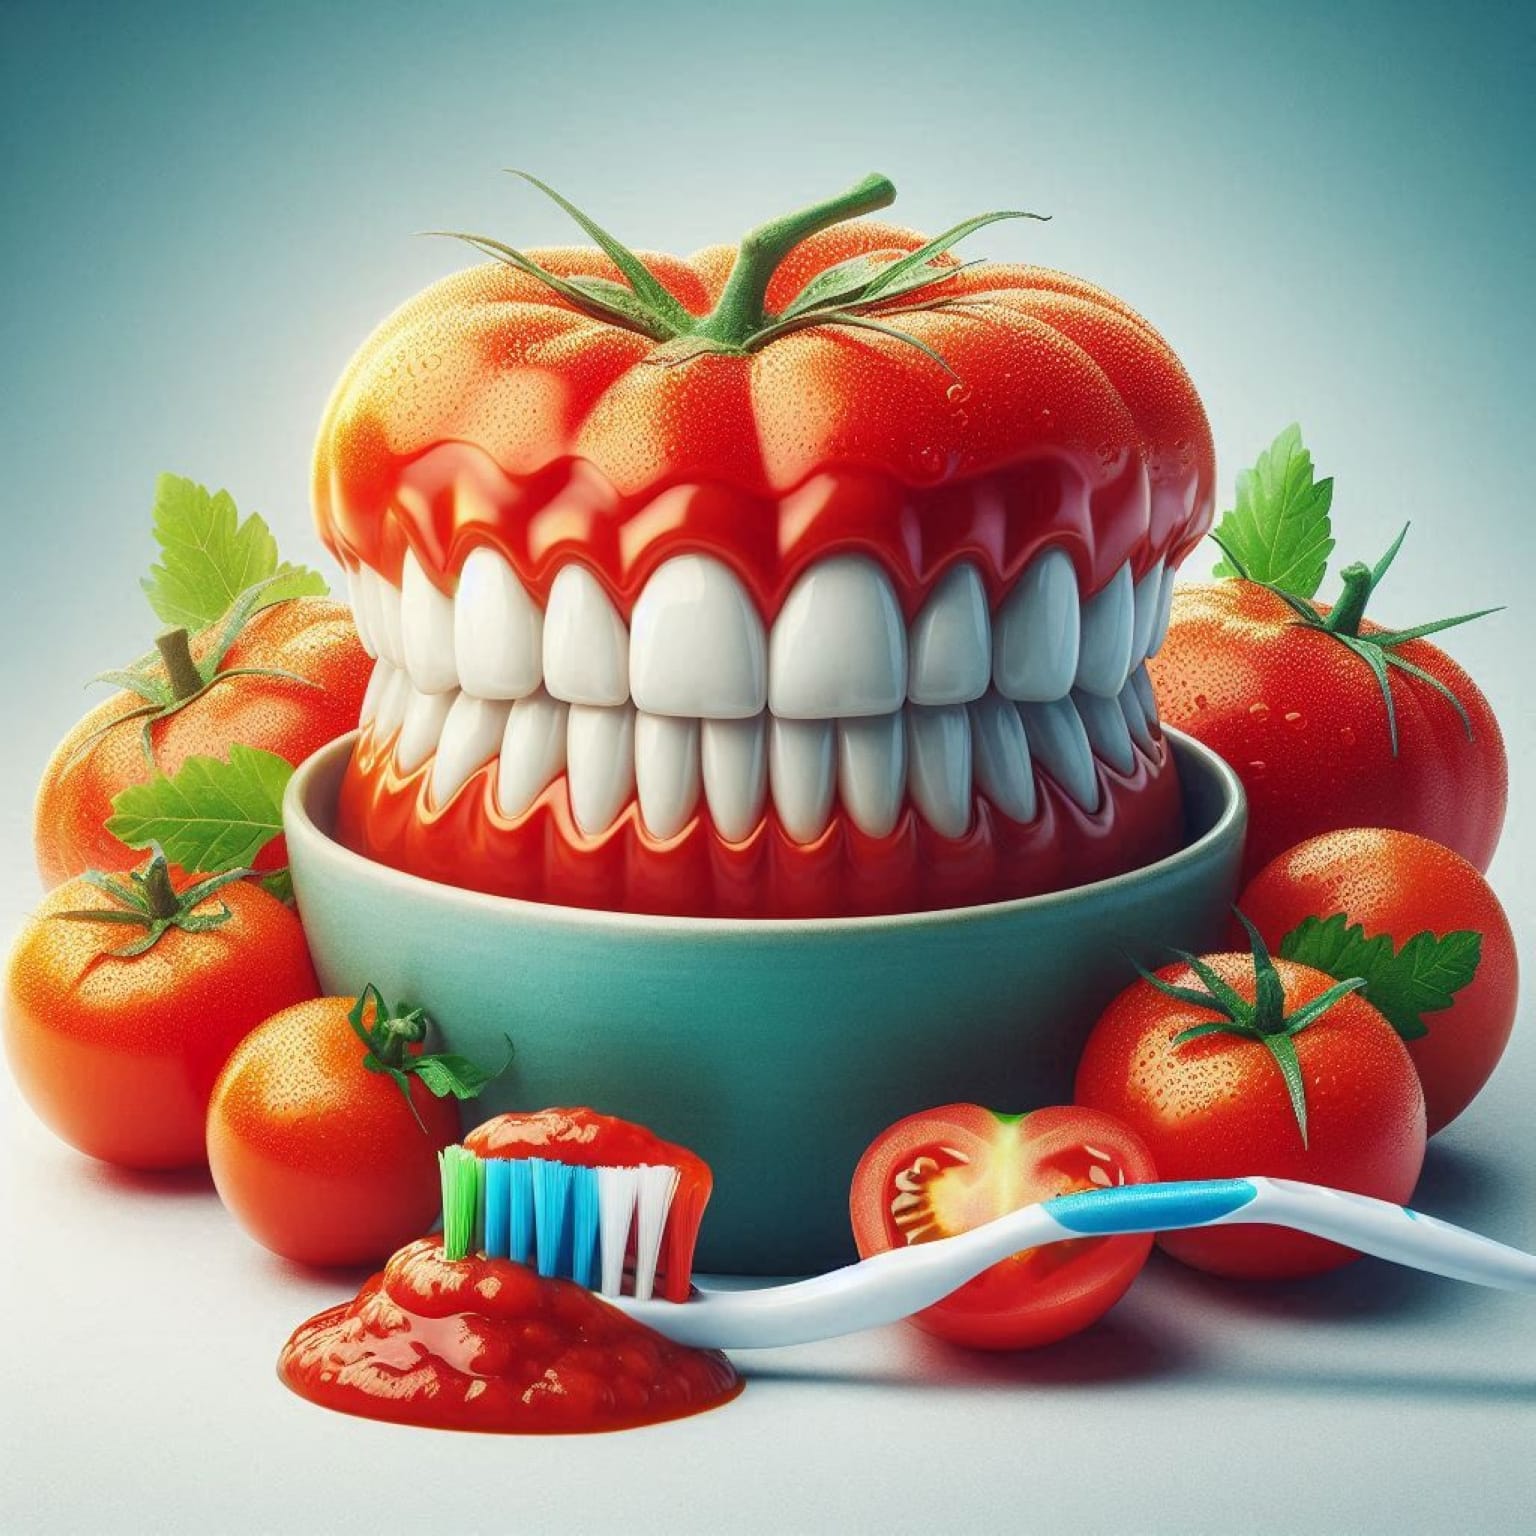 Vorteile von Lycopin und Tomaten für die Mundgesundheit gesundheit 7